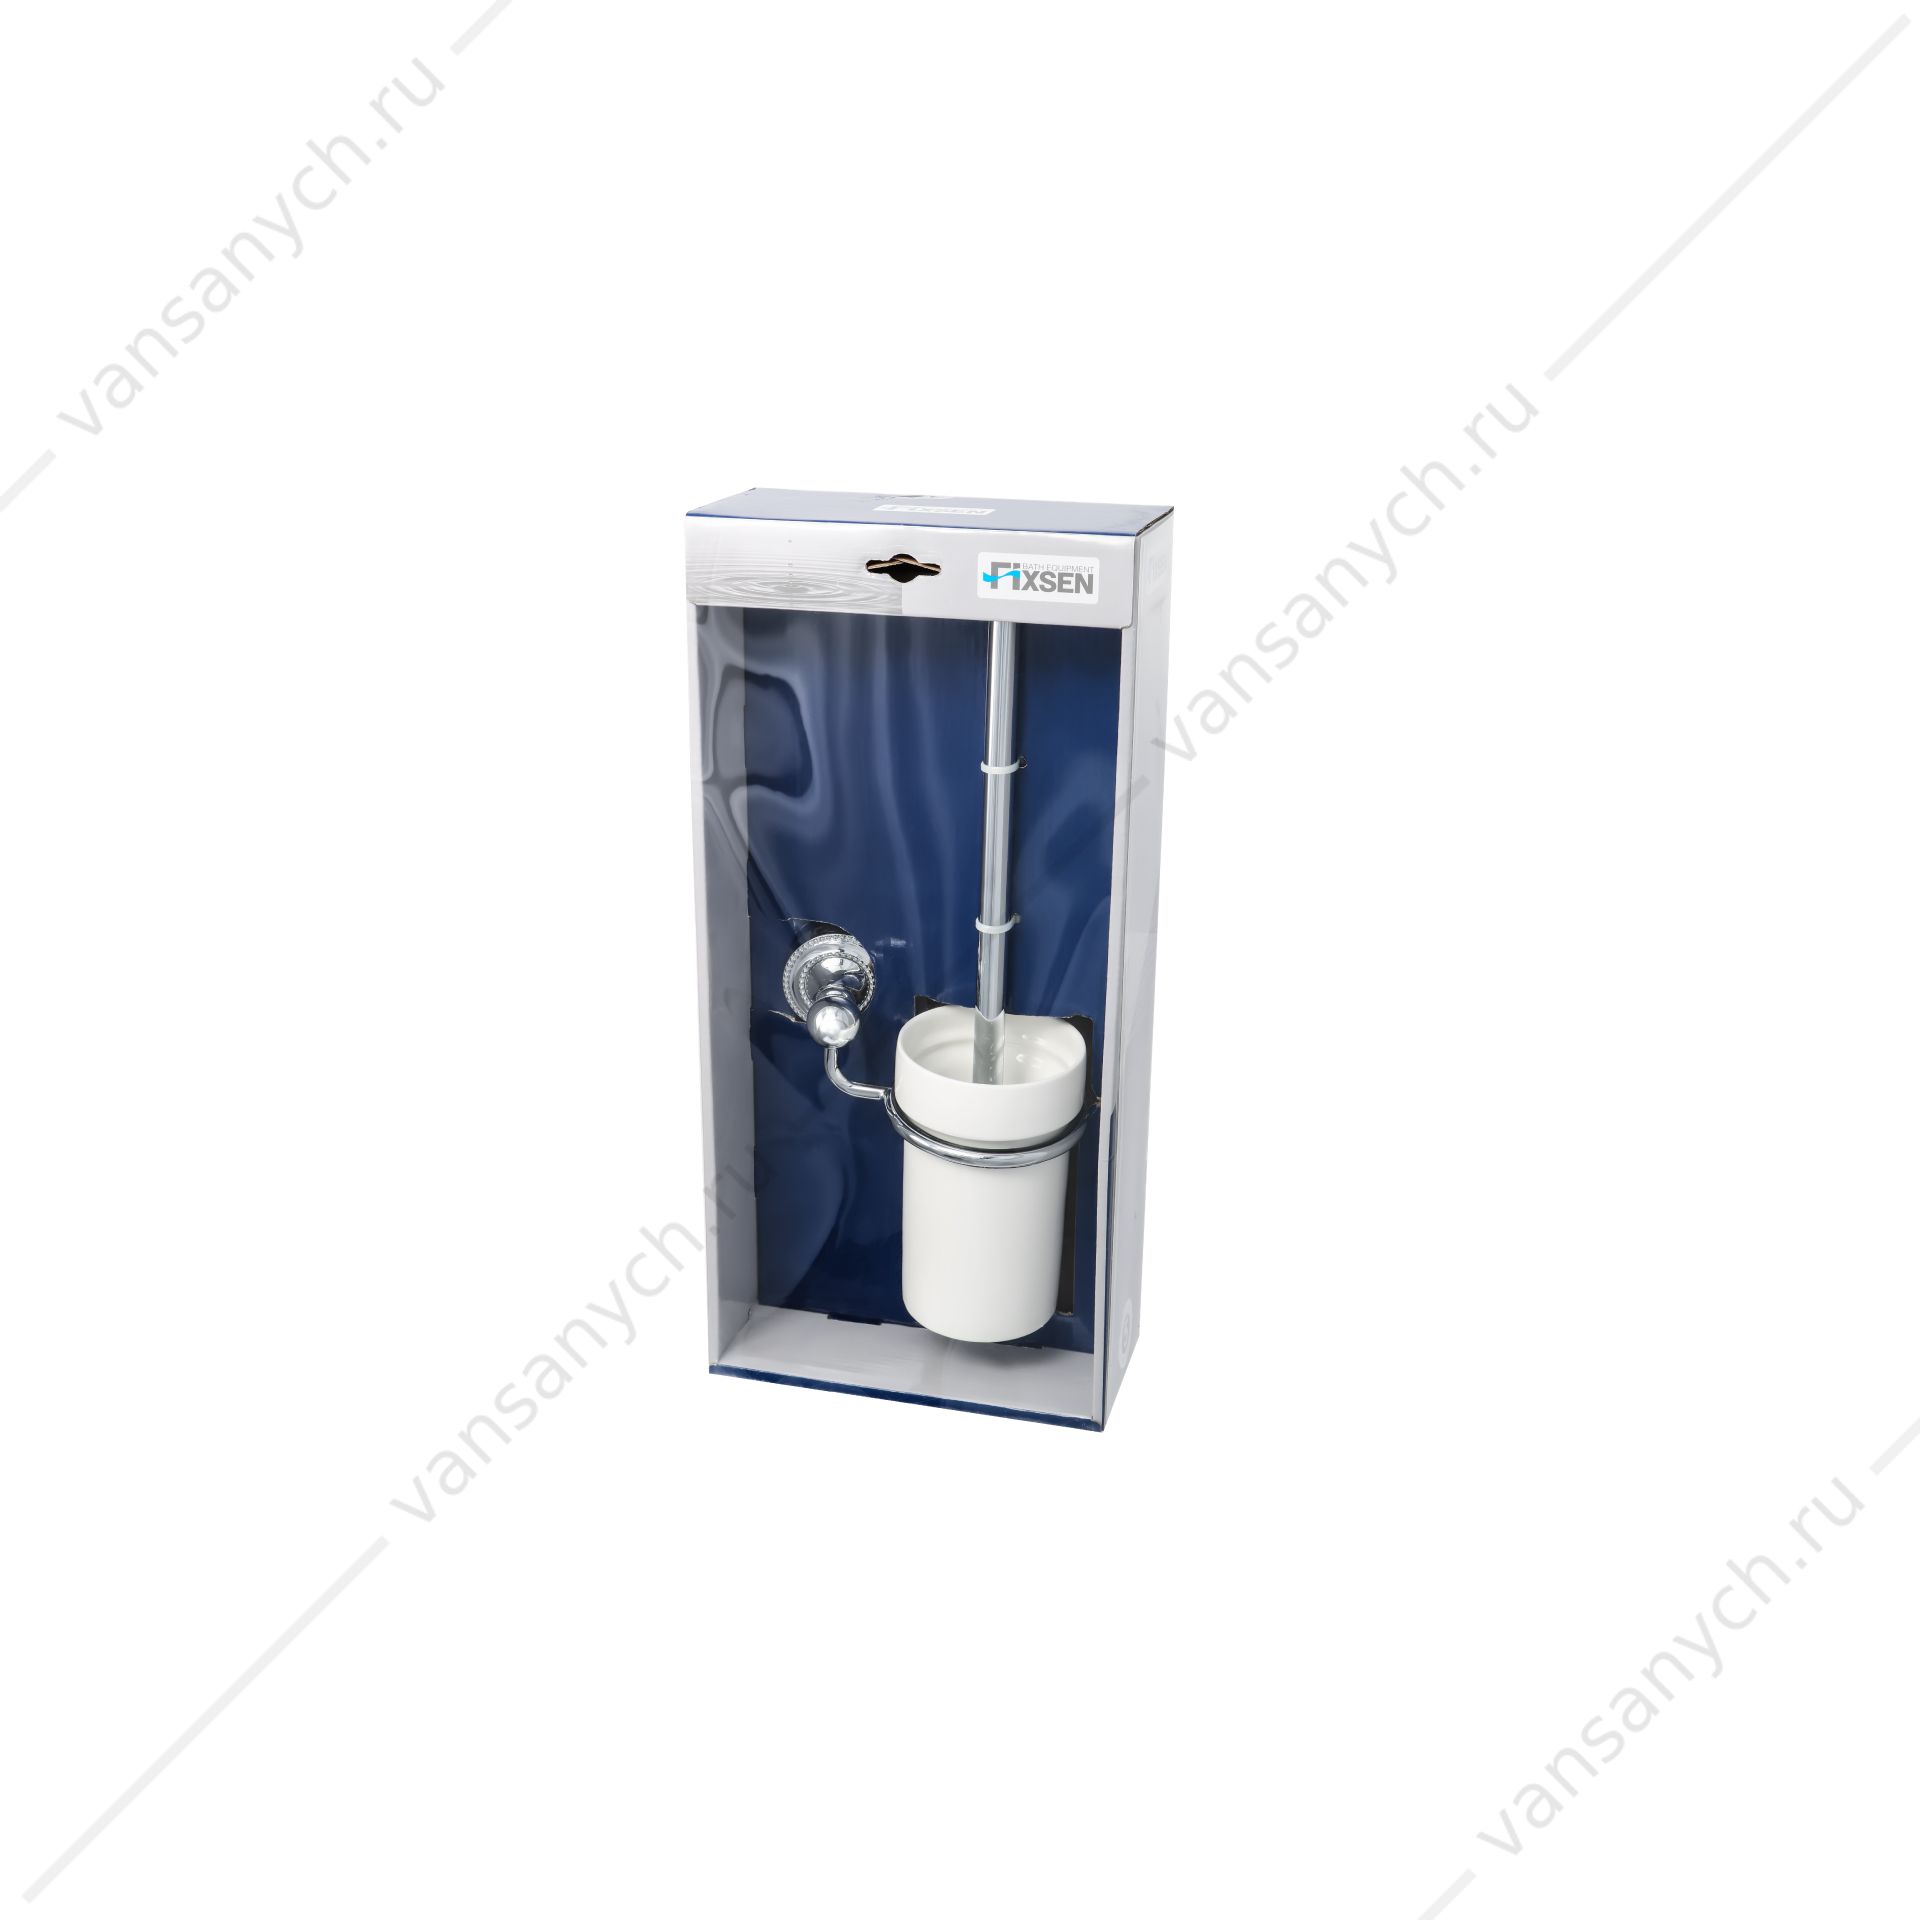 Ерш для туалета Fixsen Style Fixsen(Чехия) купить в Тюмени (Ван Саныч™)